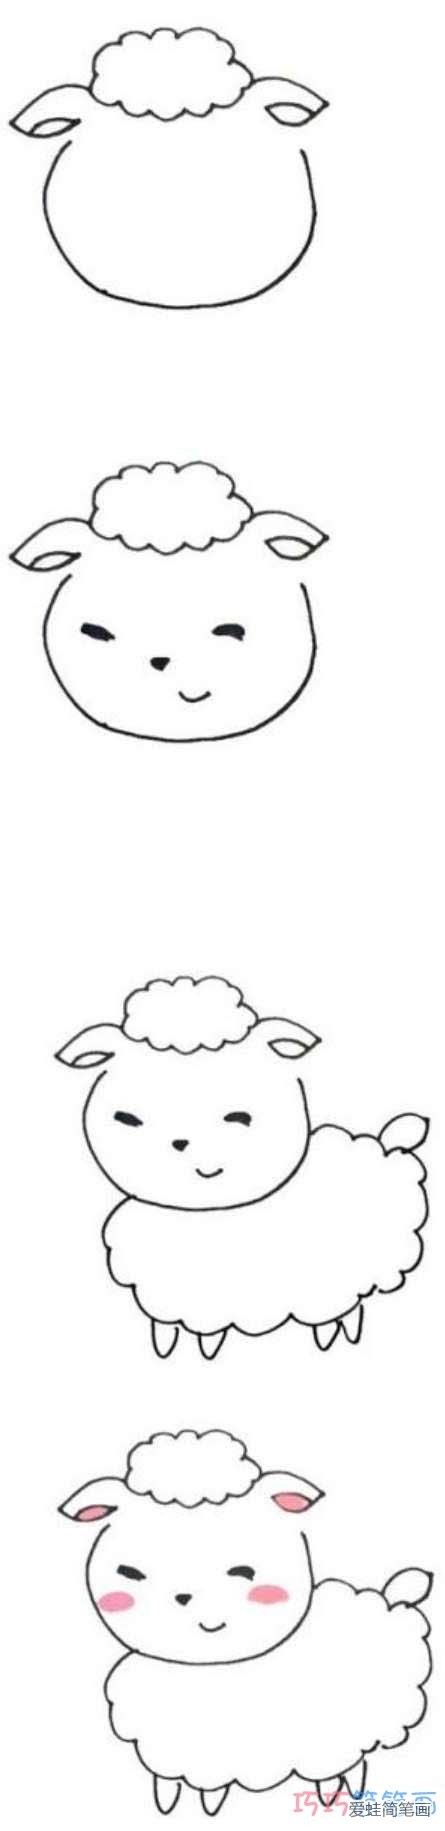 简单可爱小绵羊的画法_其他动物简笔画-简笔画大全